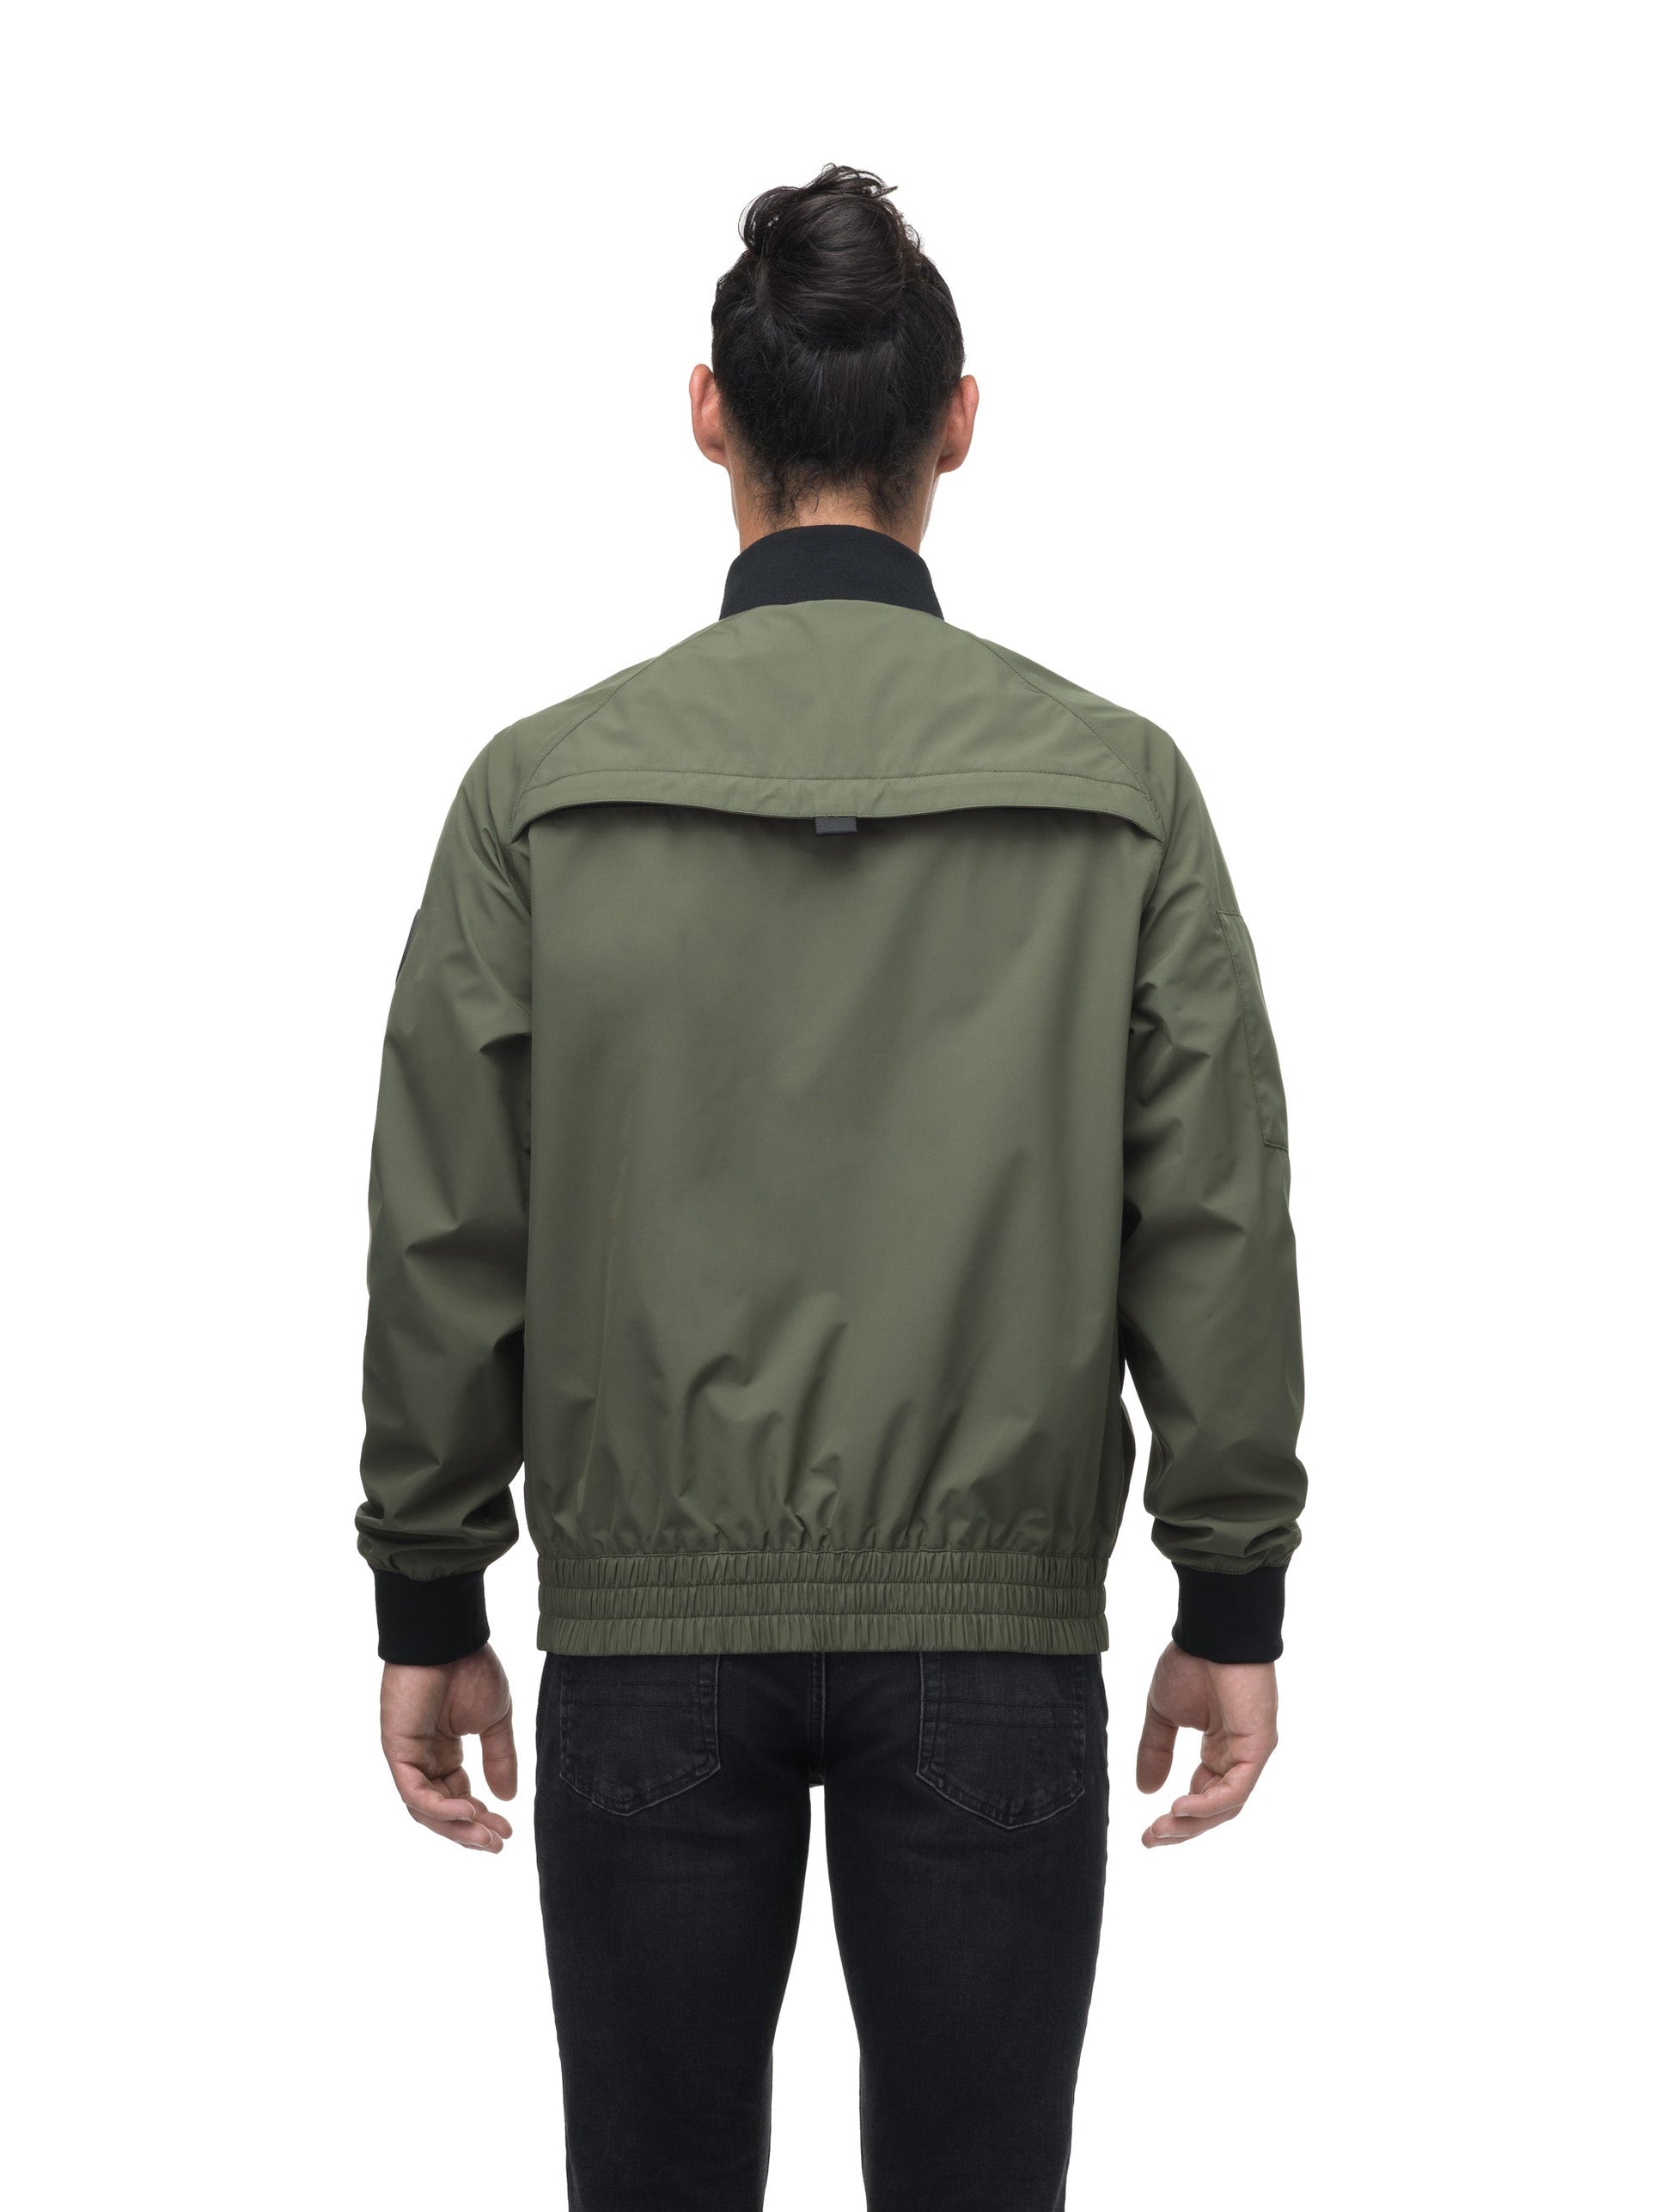 Men's hip length waterproof bomber jacket with 2-way zipper in Fatigue